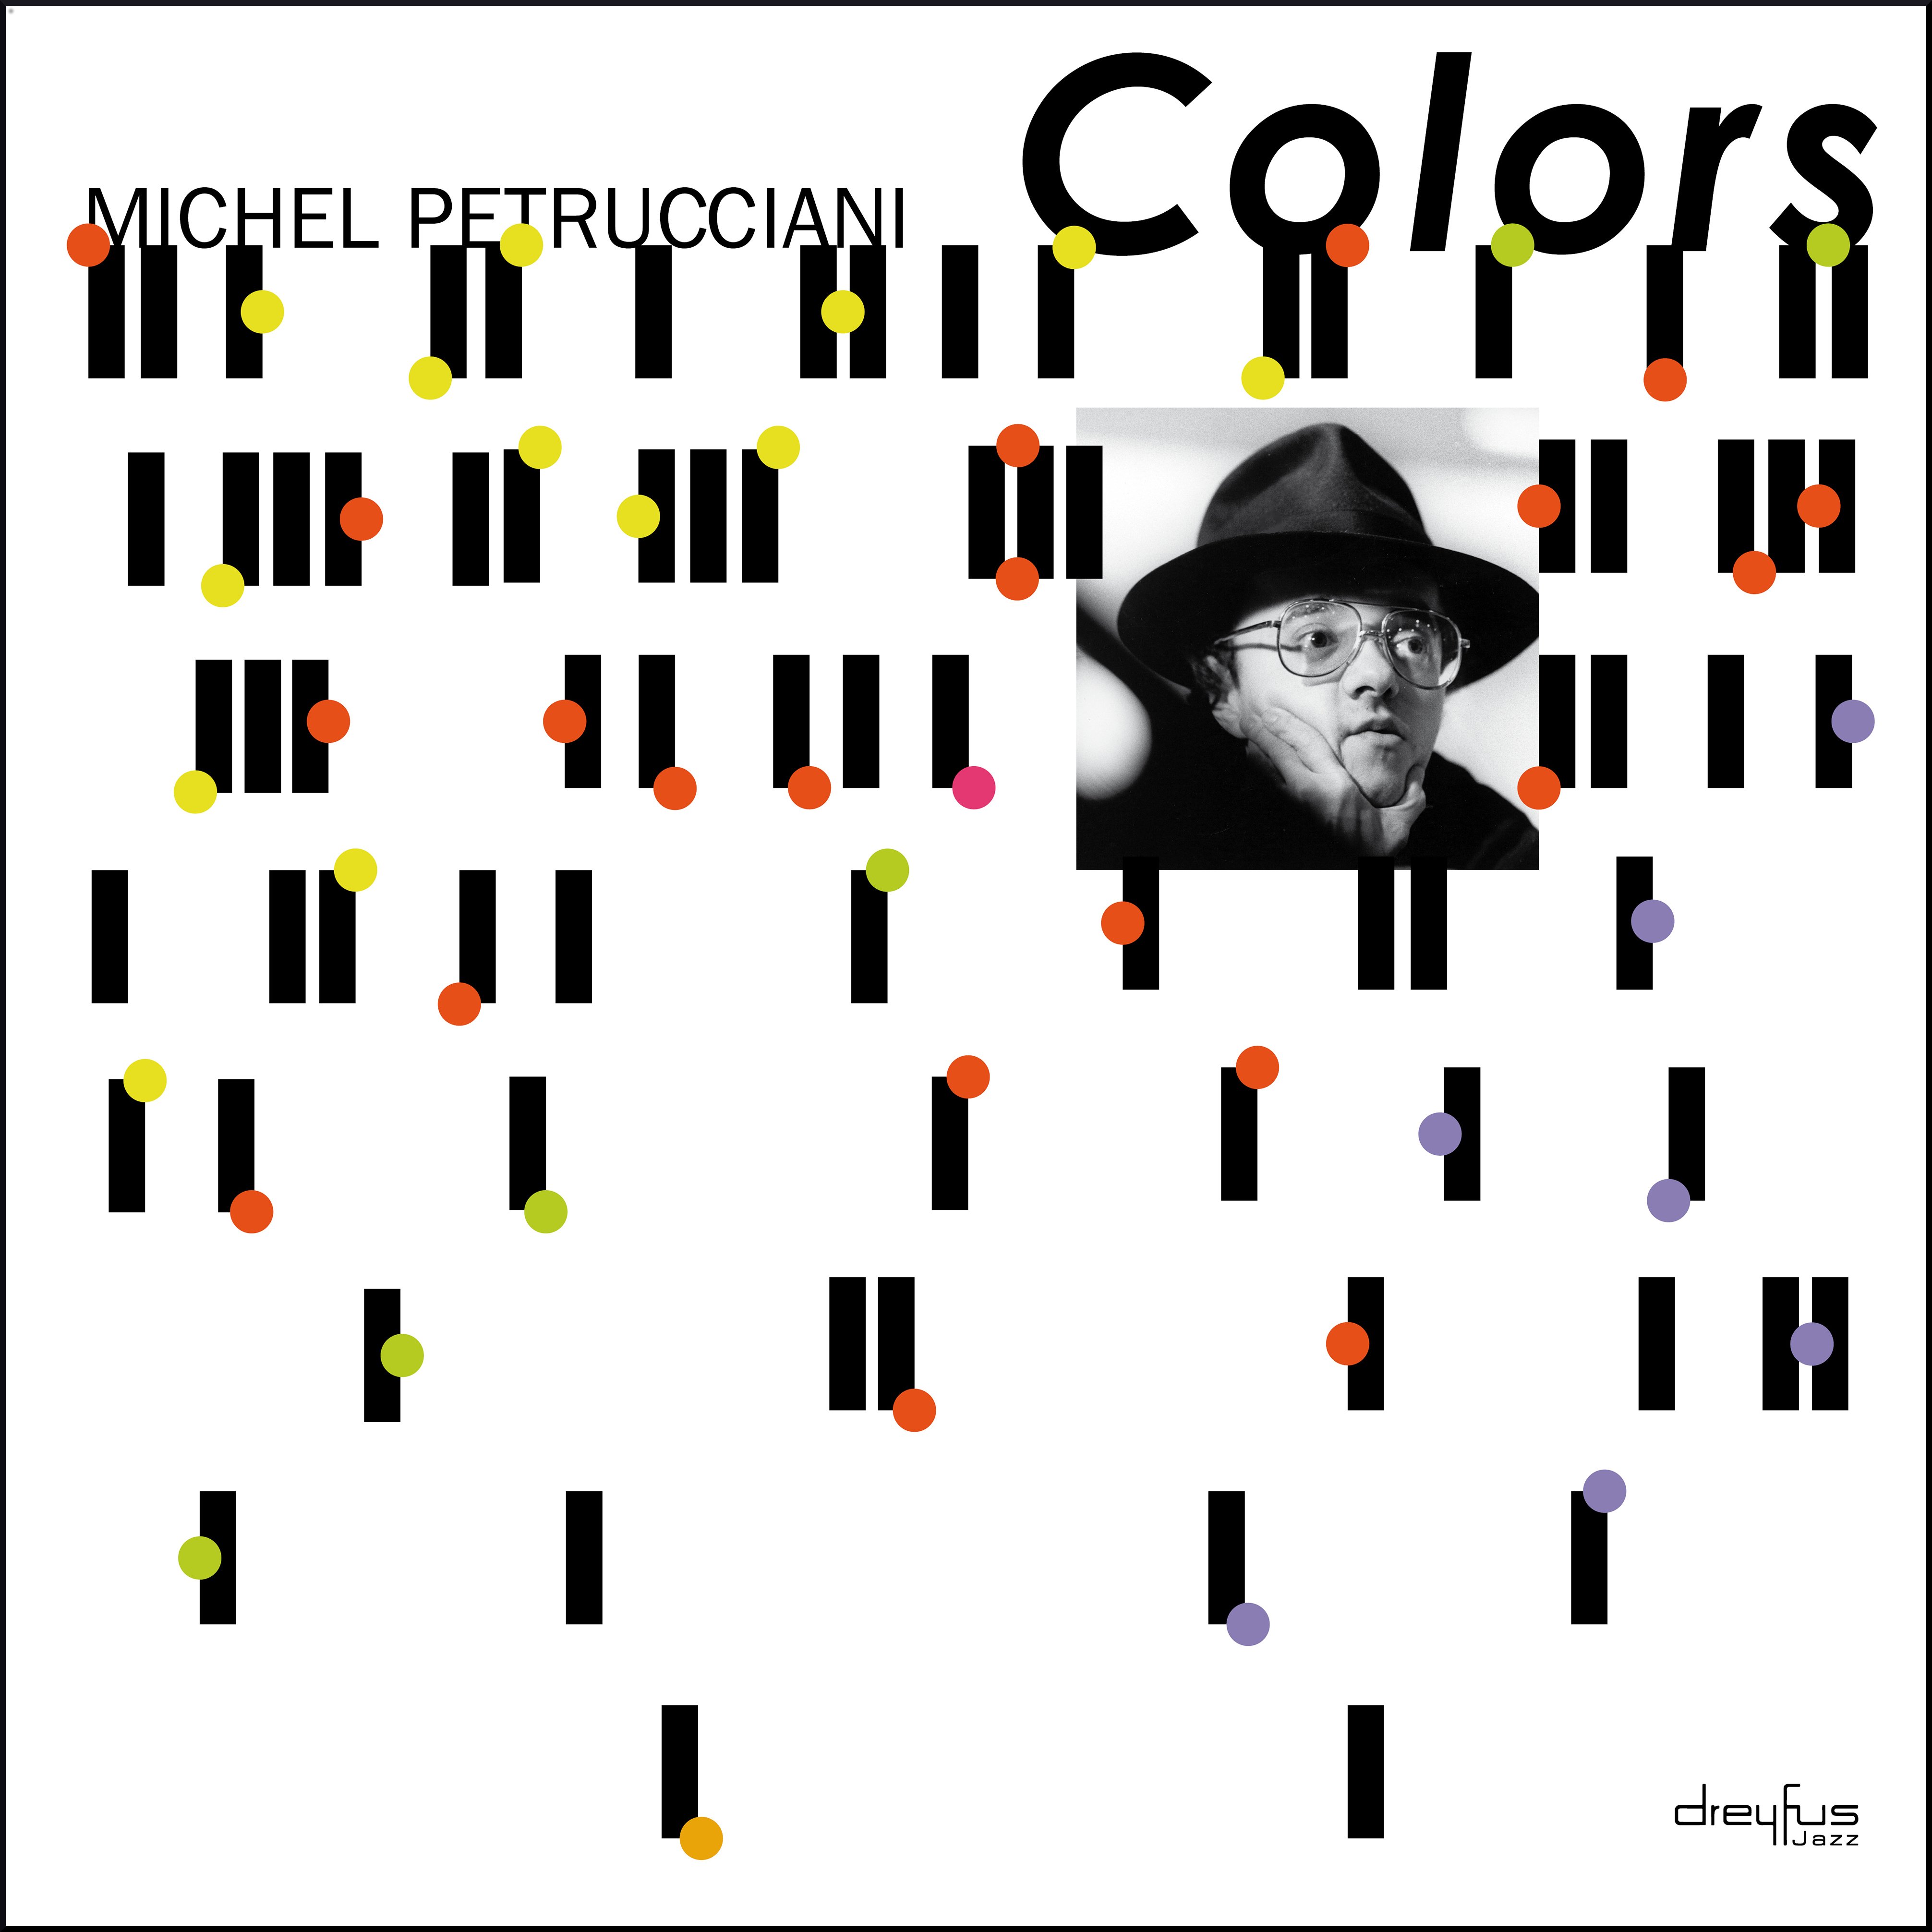 Il 25 ottobre esce “Colors” il nuovo album di Michel Petrucciani